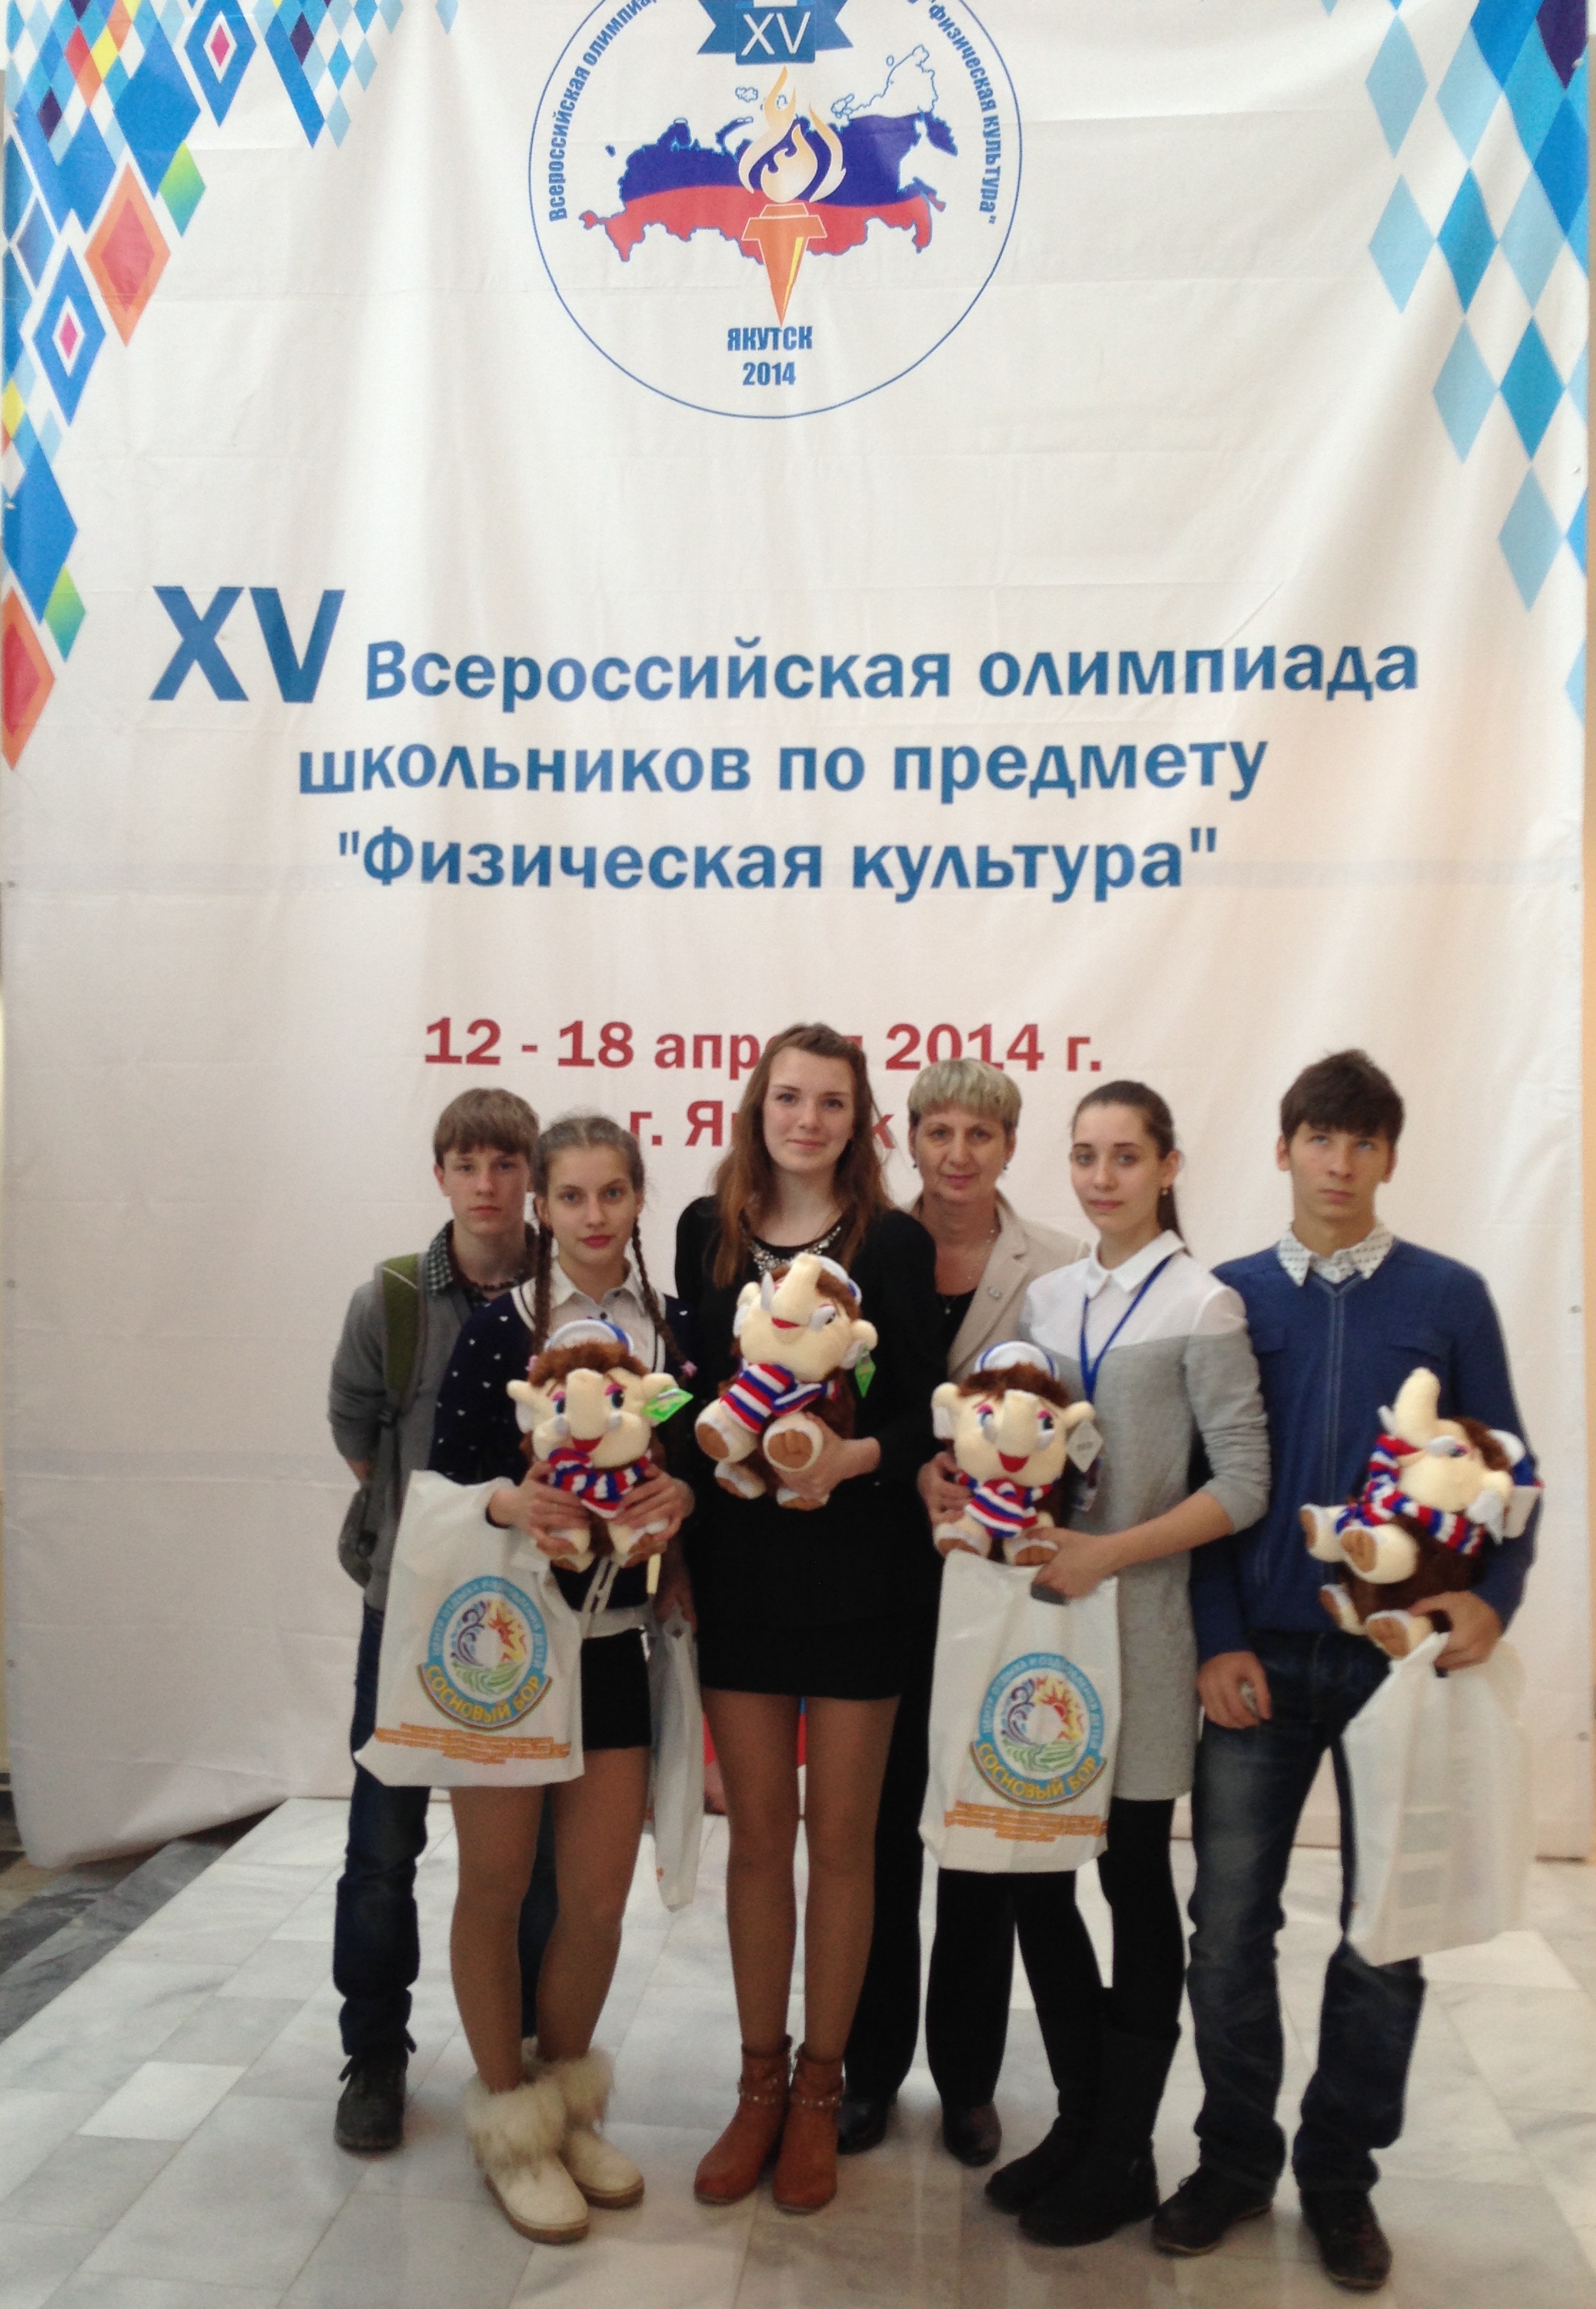 Всероссийская олимпиада школьников 2013 - 2014 года - «Виртуальная Академия»